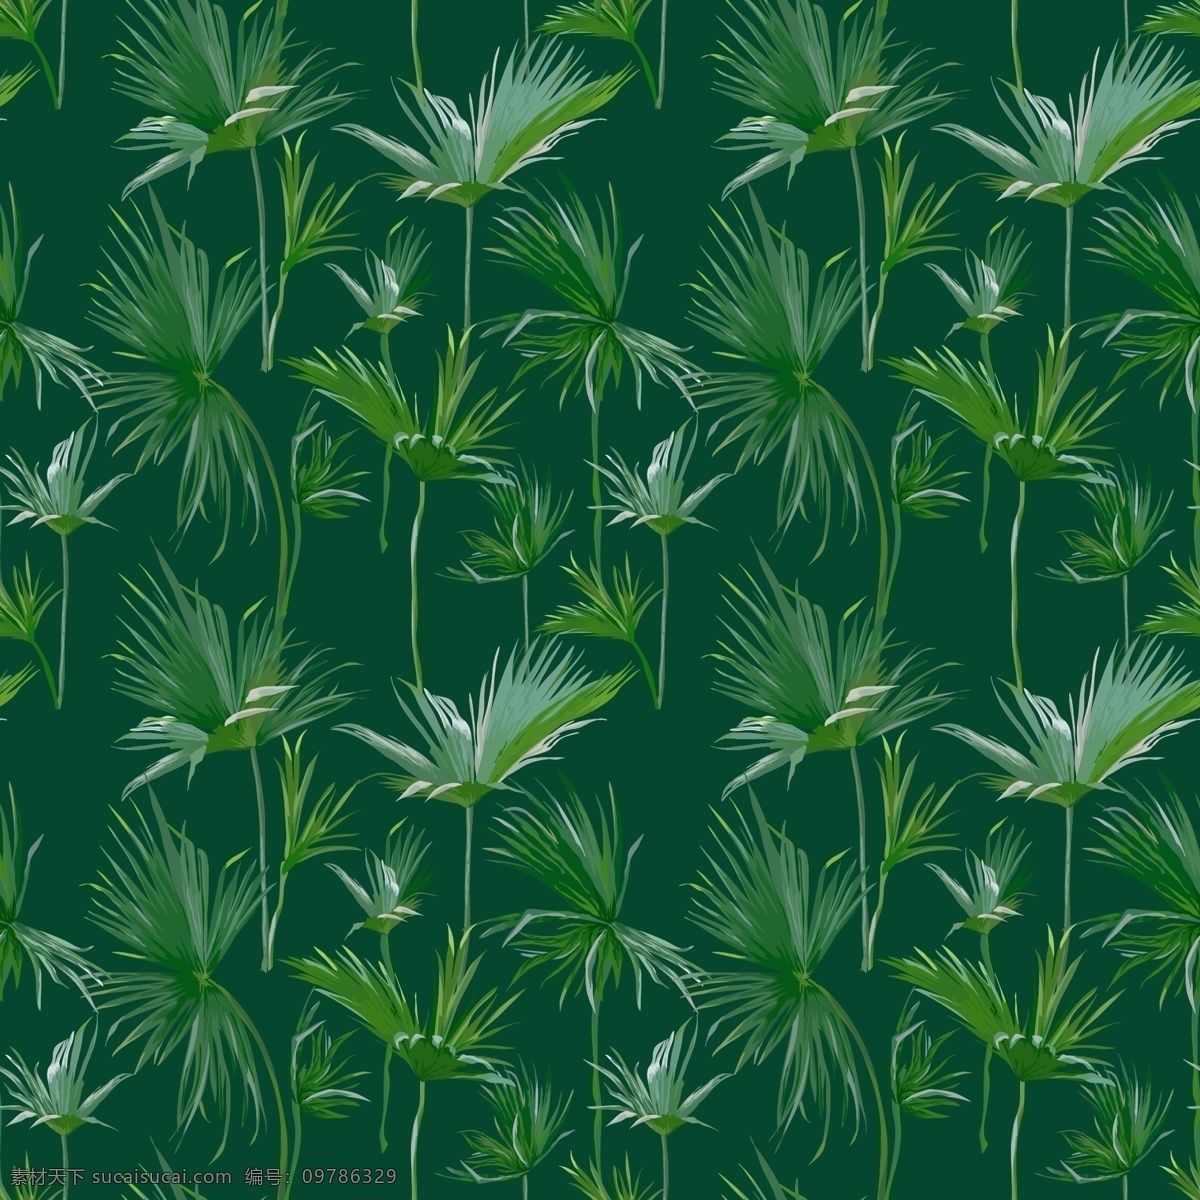 水彩 热带 风情 矢量 背景 绿色 矢量素材 设计素材 背景素材